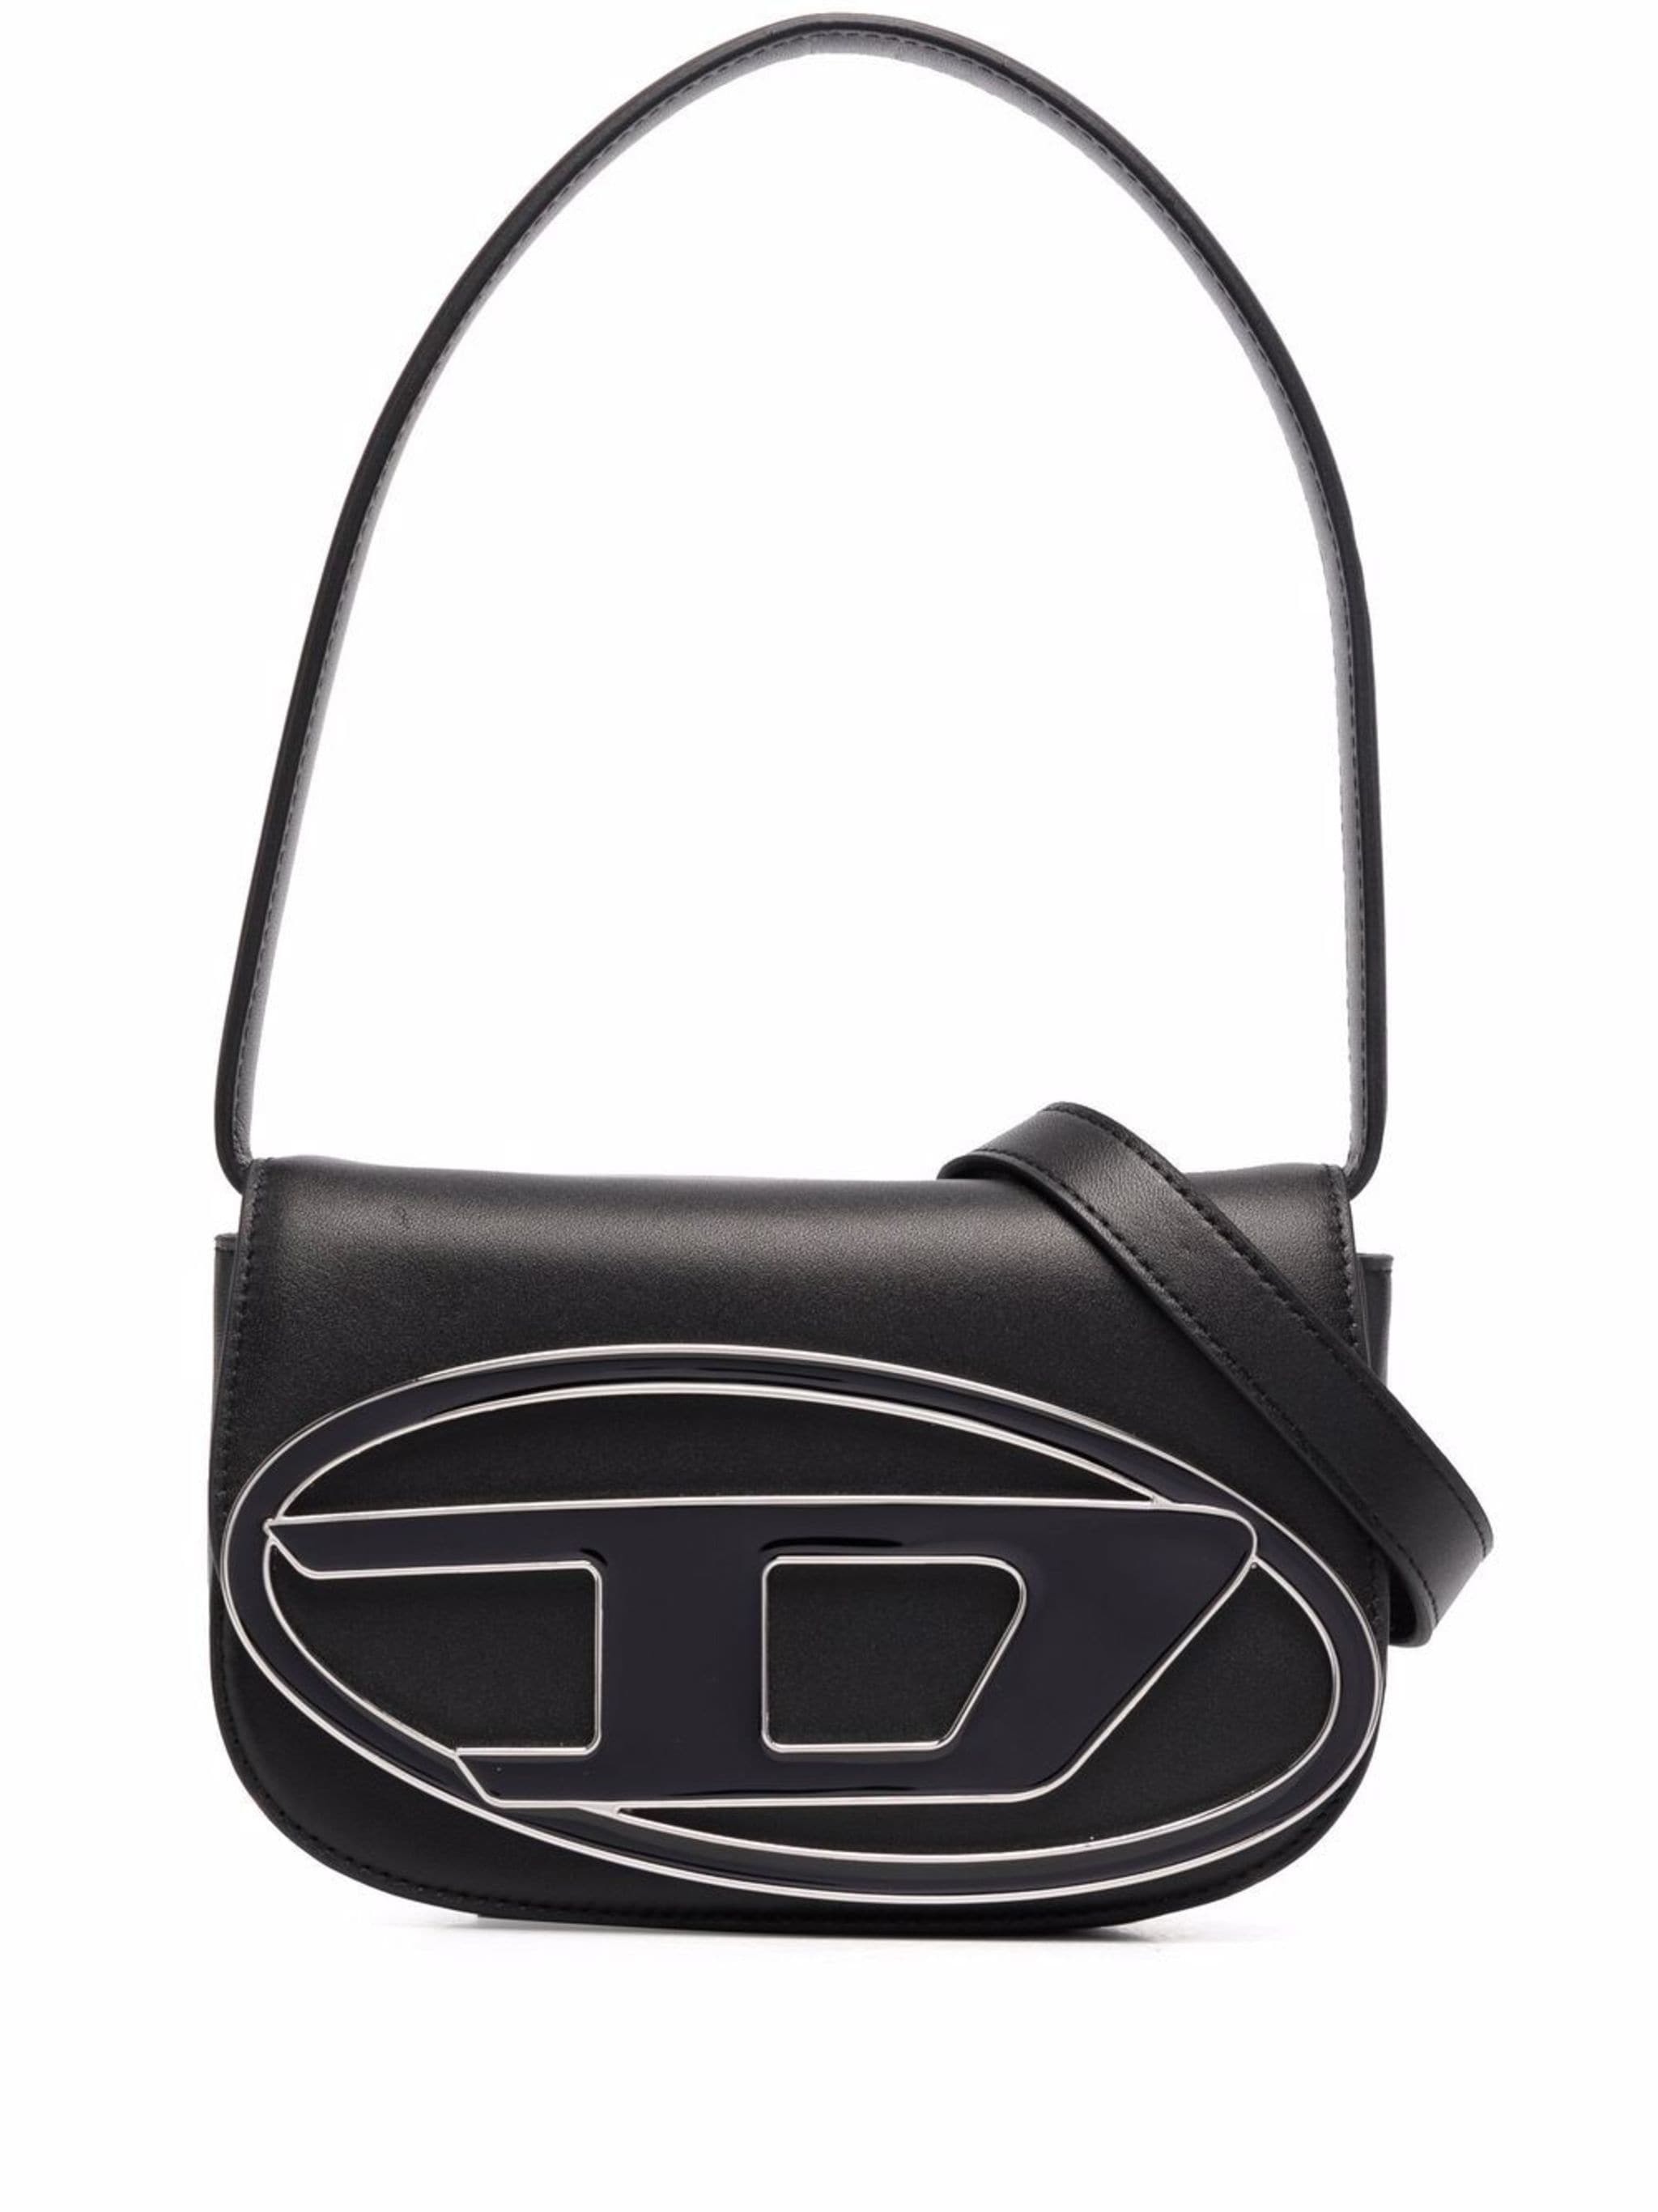 1DR leather shoulder bag - 1